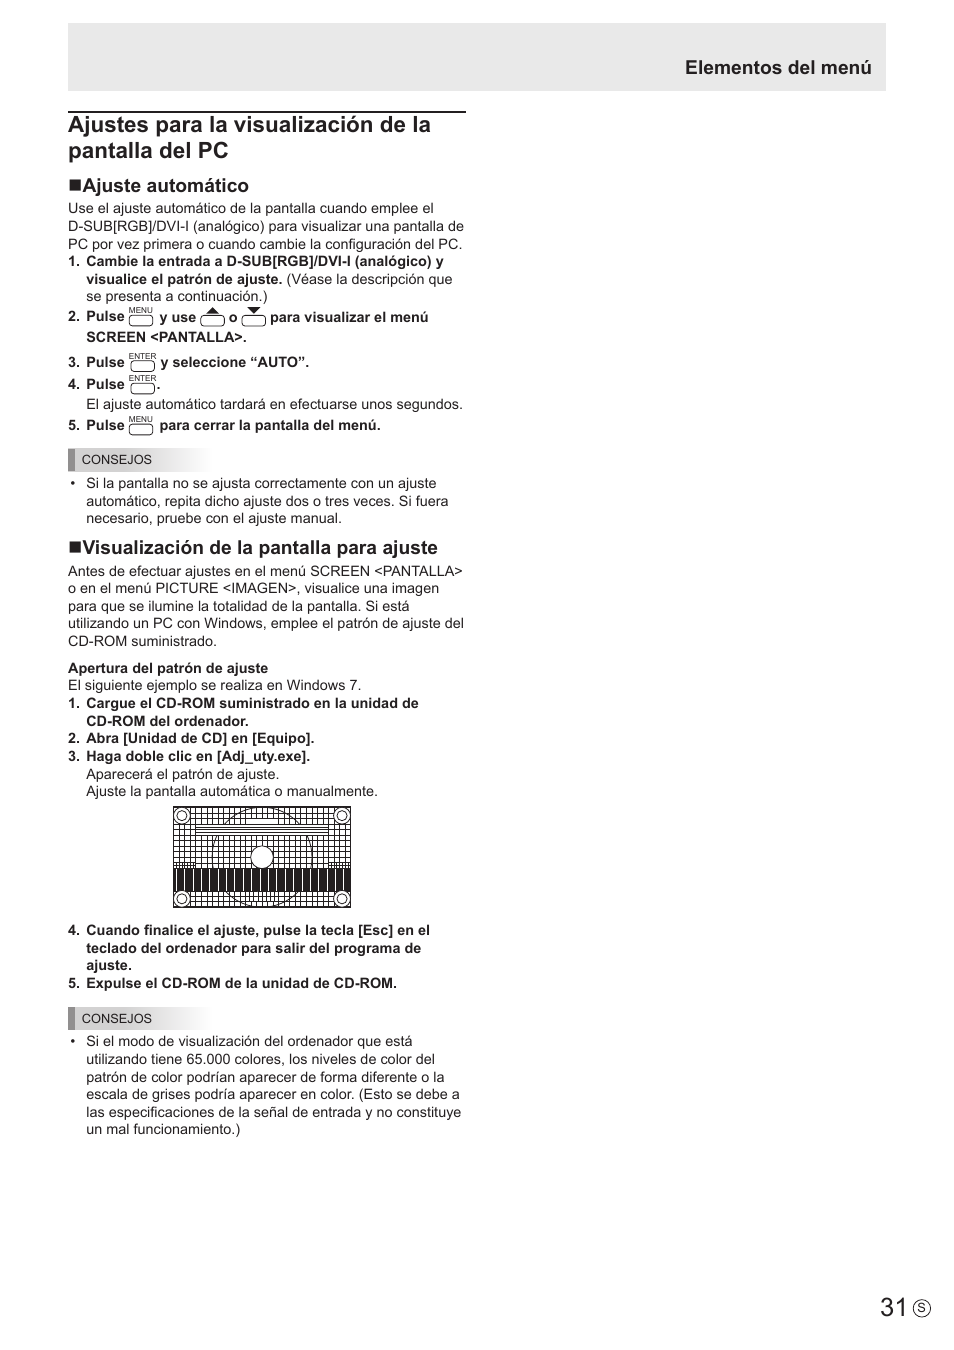 Elementos del menú, Najuste automático, Nvisualización de la pantalla para ajuste | Sharp PN-E703 Manual del usuario | Página 31 / 63